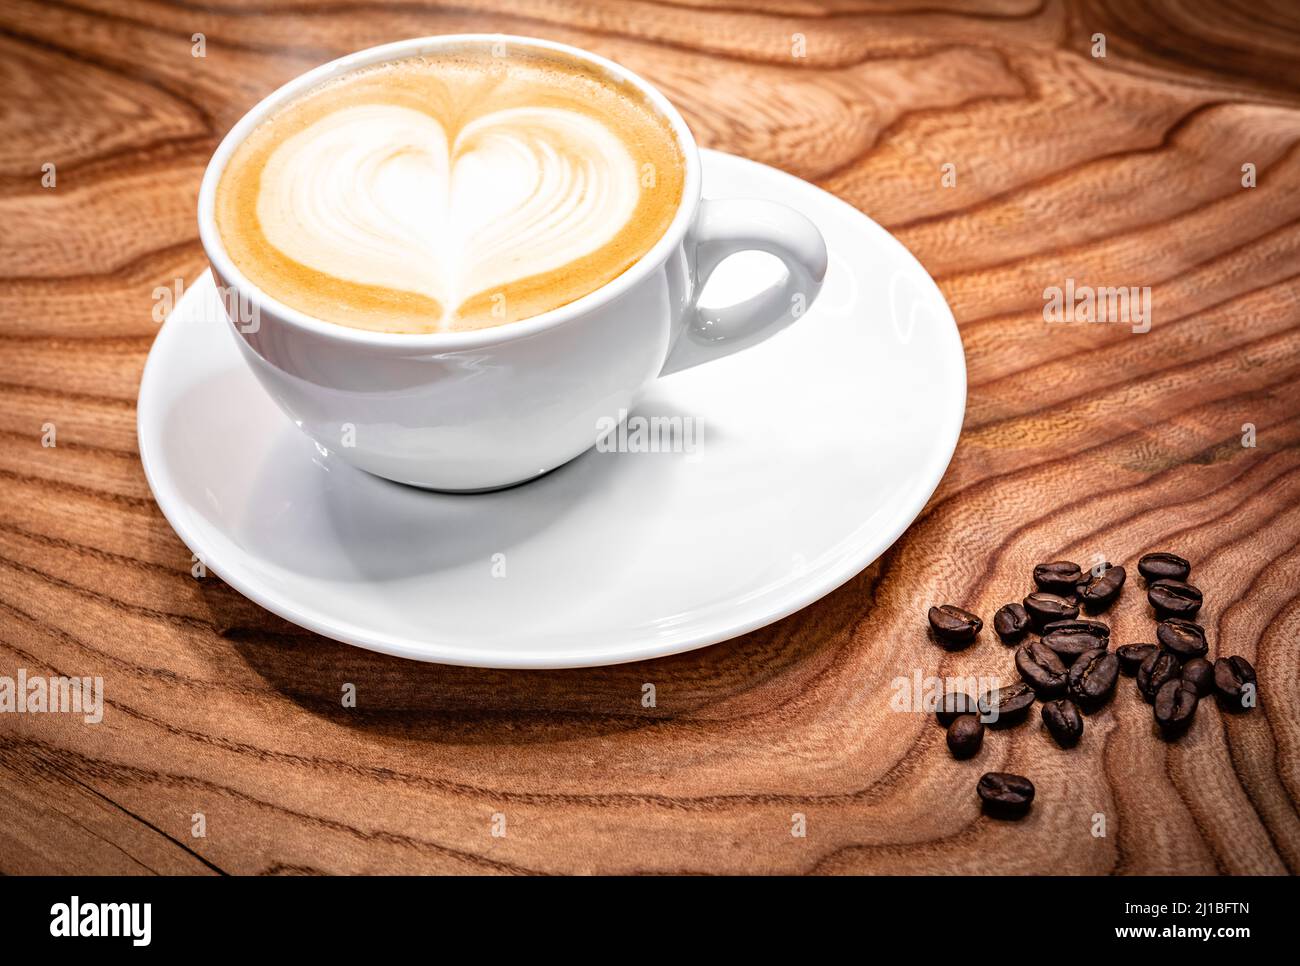 https://c8.alamy.com/compes/2j1bftn/taza-de-cafe-con-leche-en-forma-de-corazon-granos-de-cafe-en-la-mesa-2j1bftn.jpg